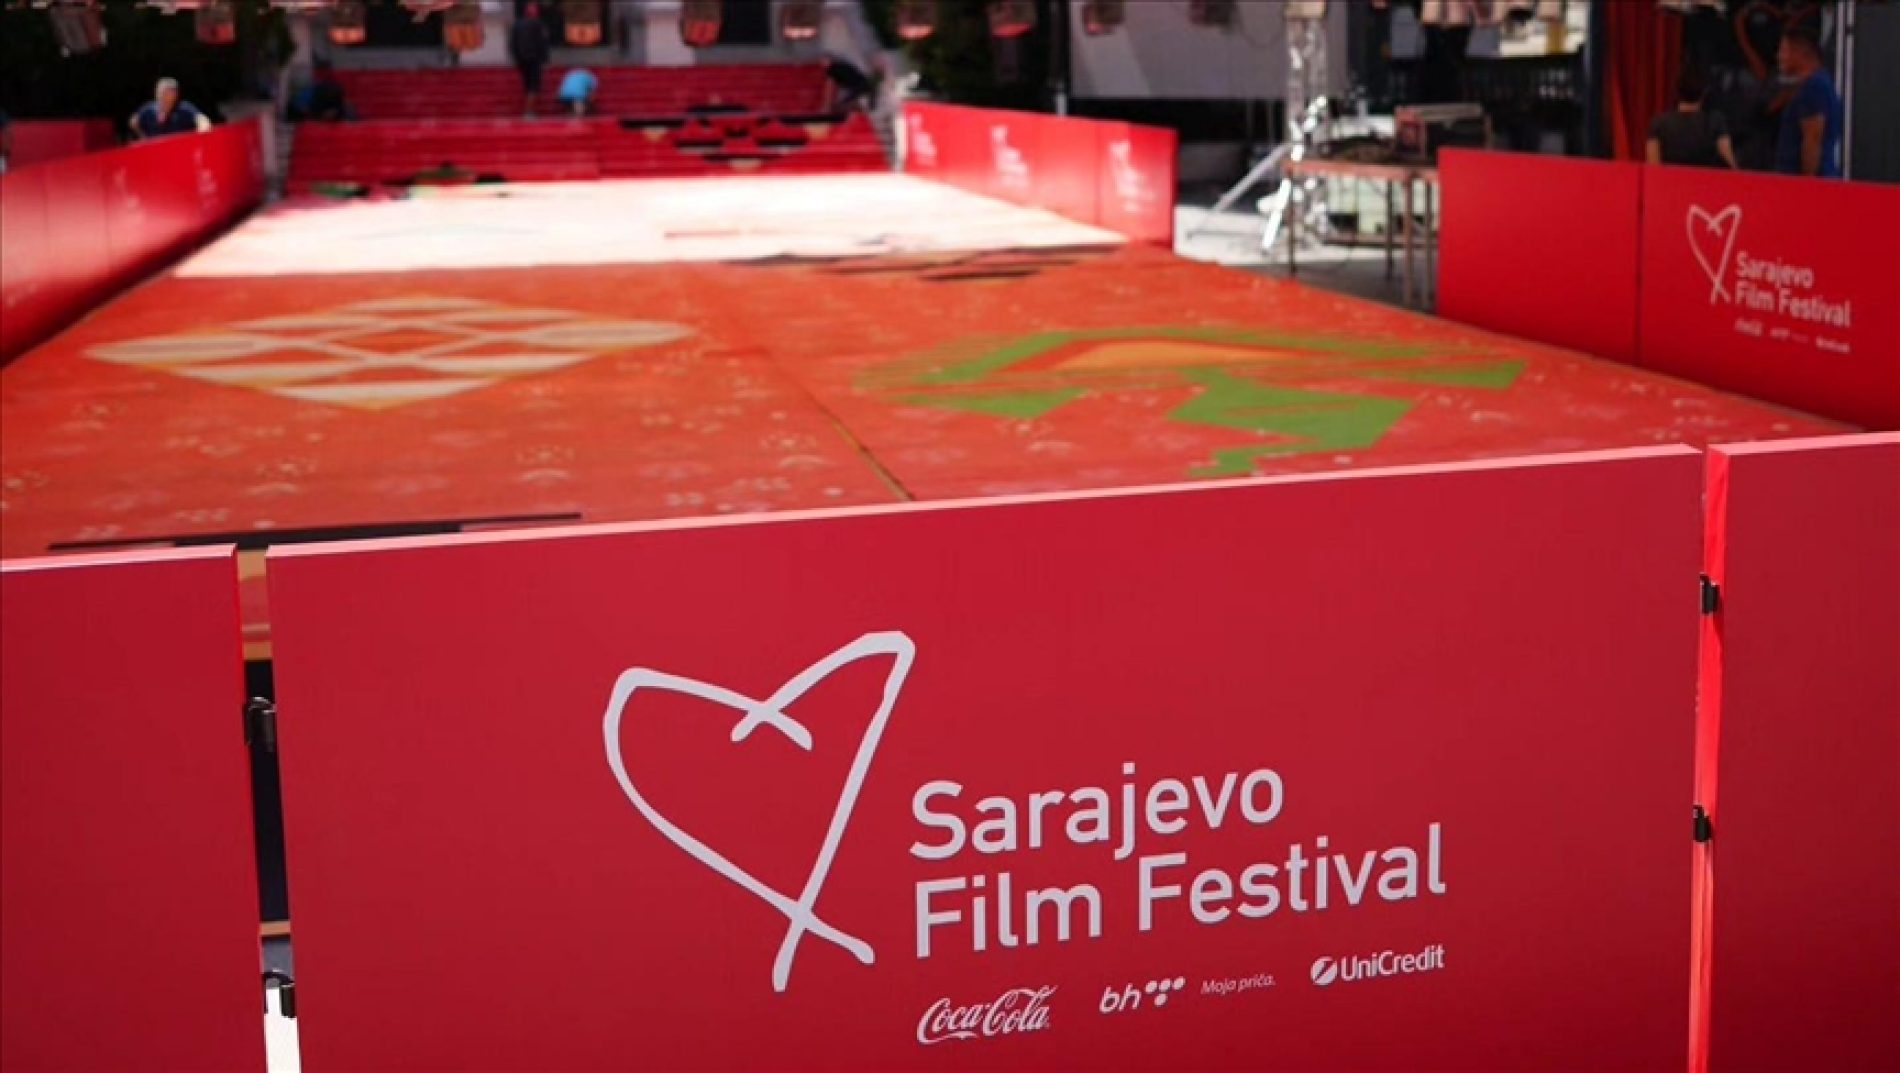 Ispred Narodnog pozorišta u Sarajevu postavljen “red carpet” sa motivima bosanskog ćilima